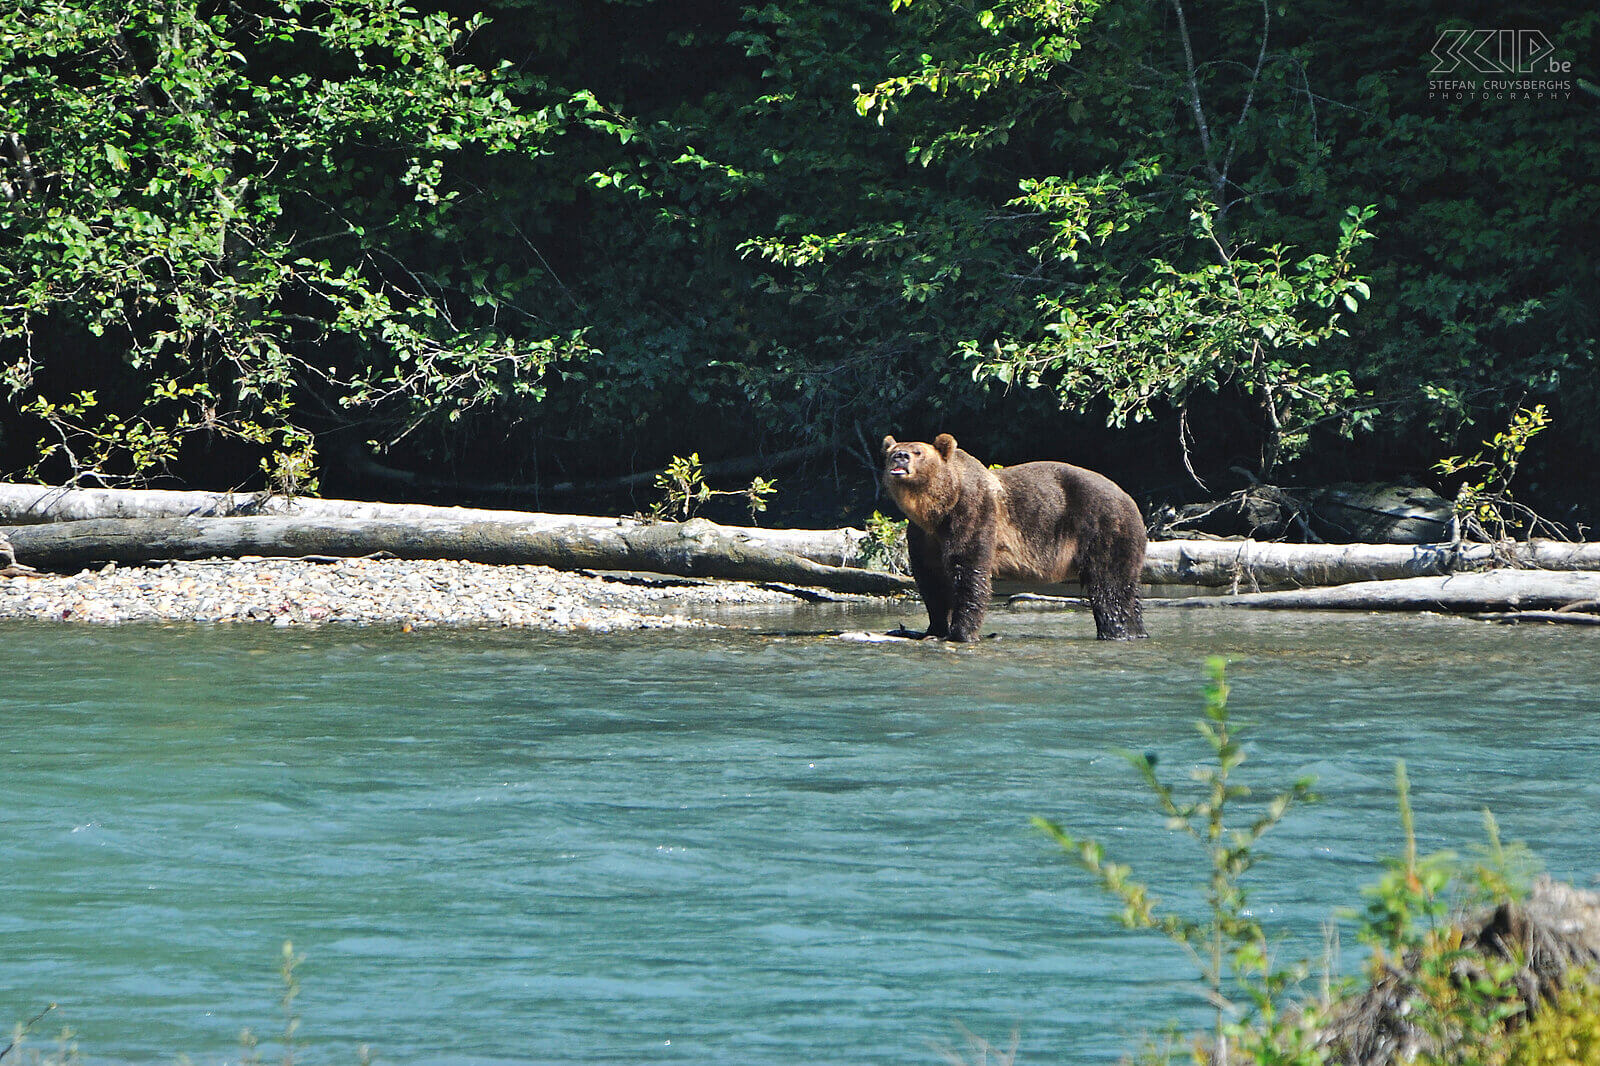 Bute Inlet - Bruine beer Ook vanuit Campbell River vertrekken we voor een tocht naar Bute Inlet in het Greate Bear Rainforest. Vanuit enkele kijkhutten kunnen we op 2 uur tijd 4 bruine beren spotten. Bruine beren die hoog in de bergen leven worden 'grizzlyberen' genoemd terwijl de bruine beren aan de kust meestal 'coastal brown bears' genoemd worden. Stefan Cruysberghs